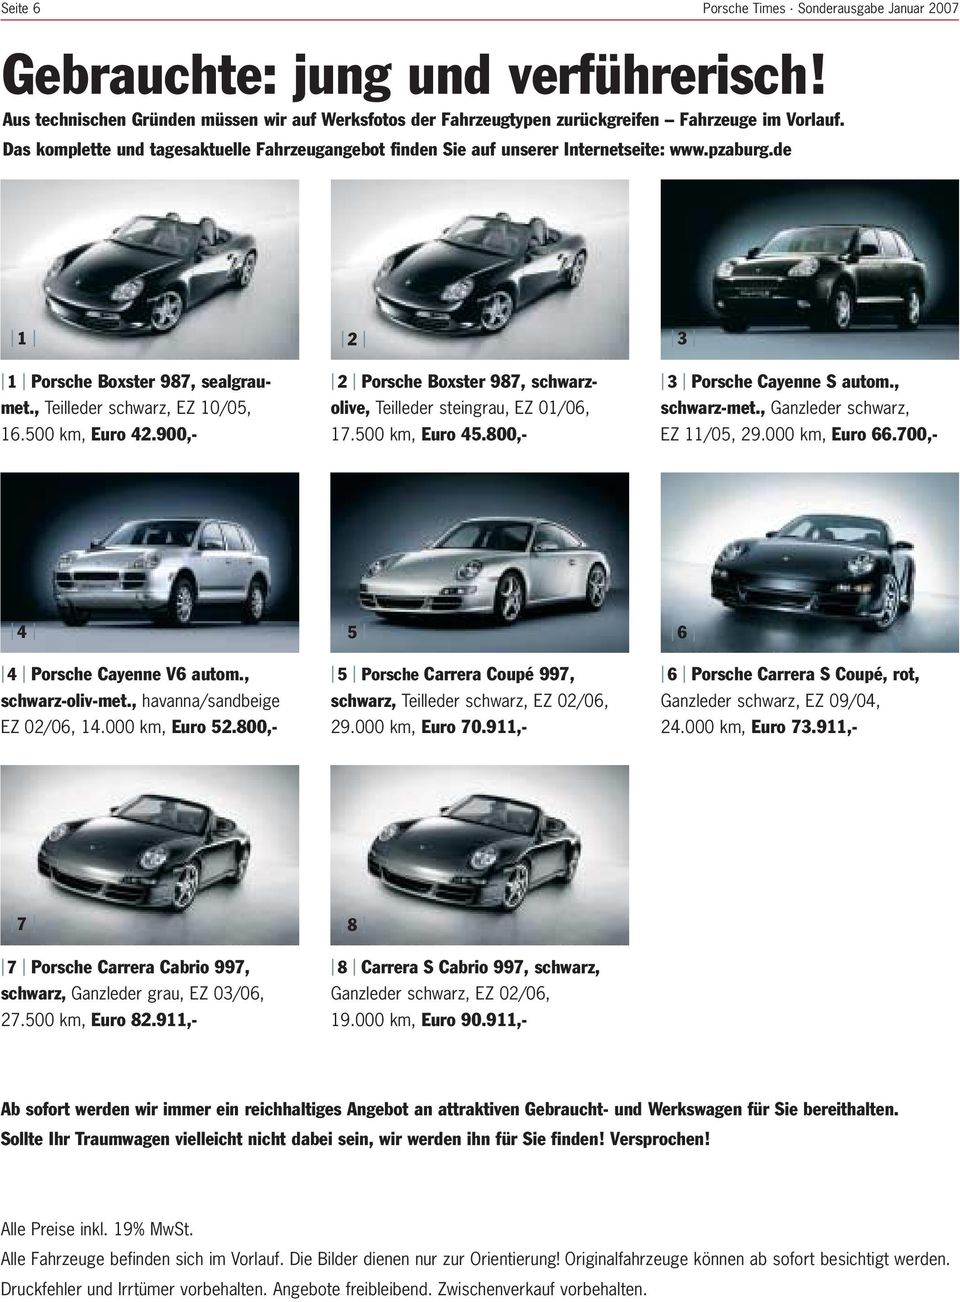 900,- 2 Porsche Boxster 987, schwarzolive, Teilleder steingrau, EZ 01/06, 17.500 km, Euro 45.800,- 3 Porsche Cayenne S autom., schwarz-met., Ganzleder schwarz, EZ 11/05, 29.000 km, Euro 66.